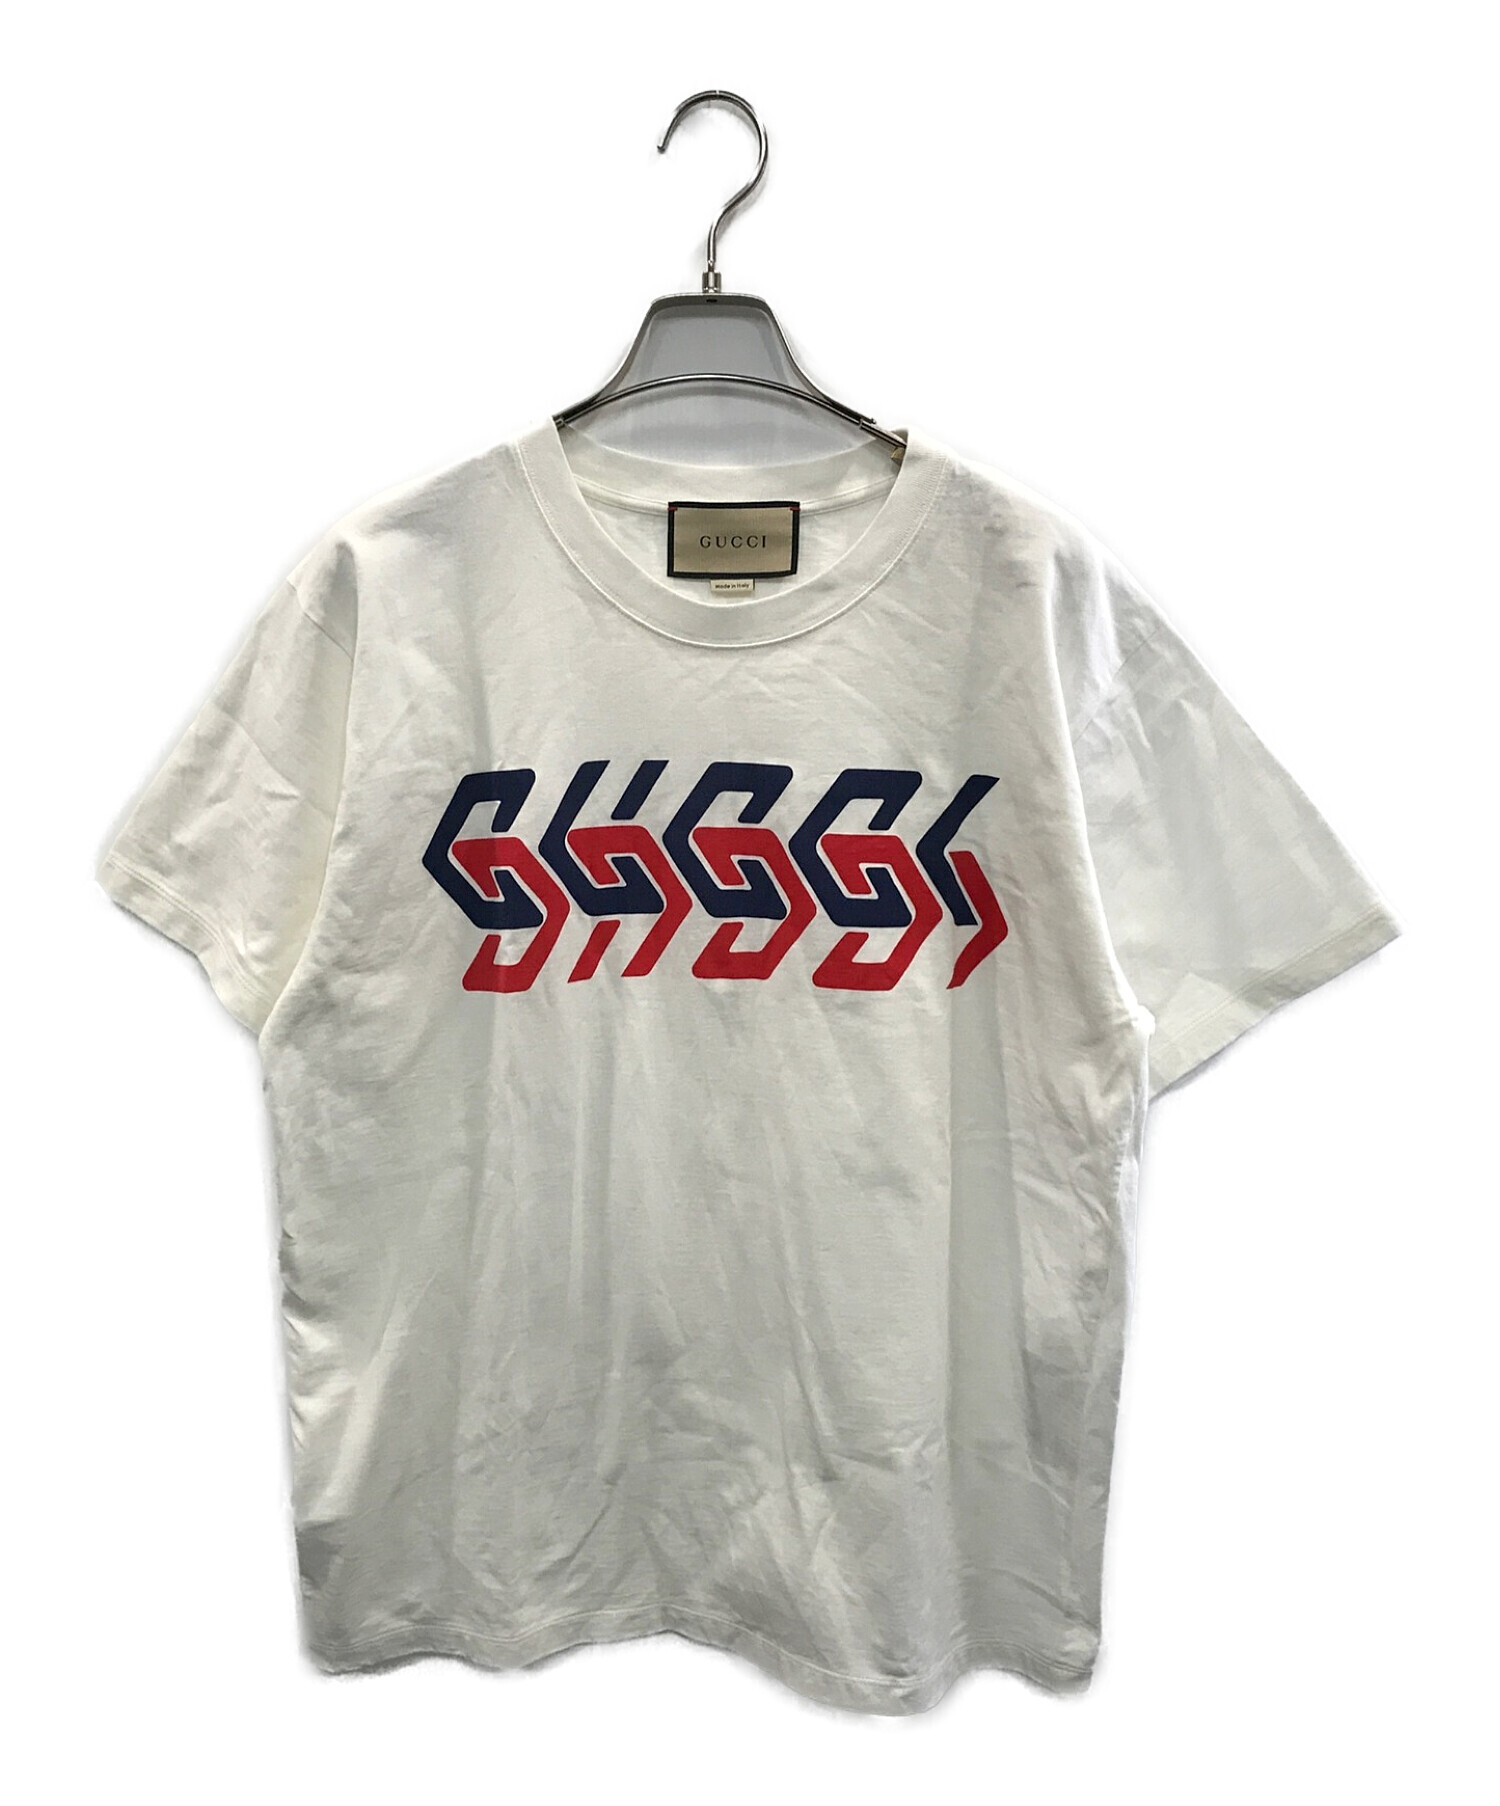 GUCCI (グッチ) ミラー プリント コットンジャージー Tシャツ ホワイト サイズ:XS